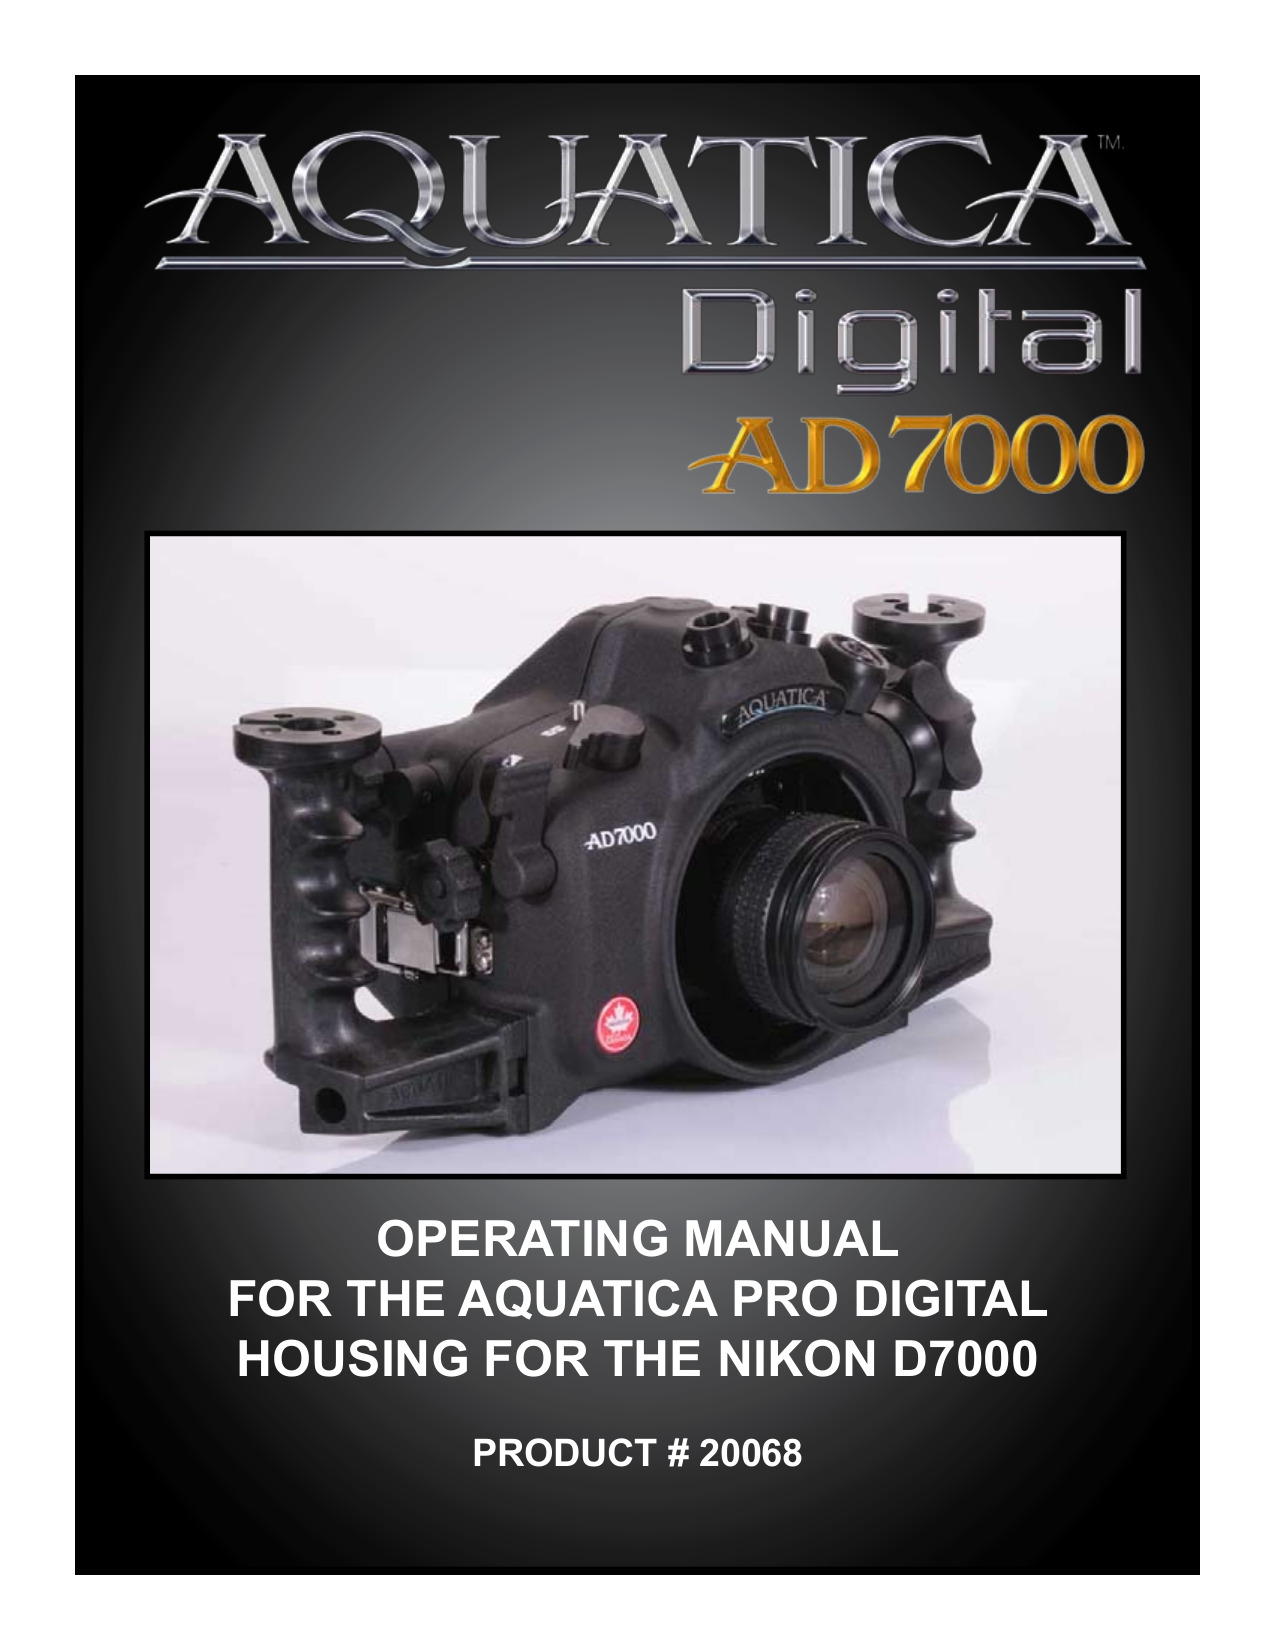 Nikon d7000 инструкция скачать бесплатно